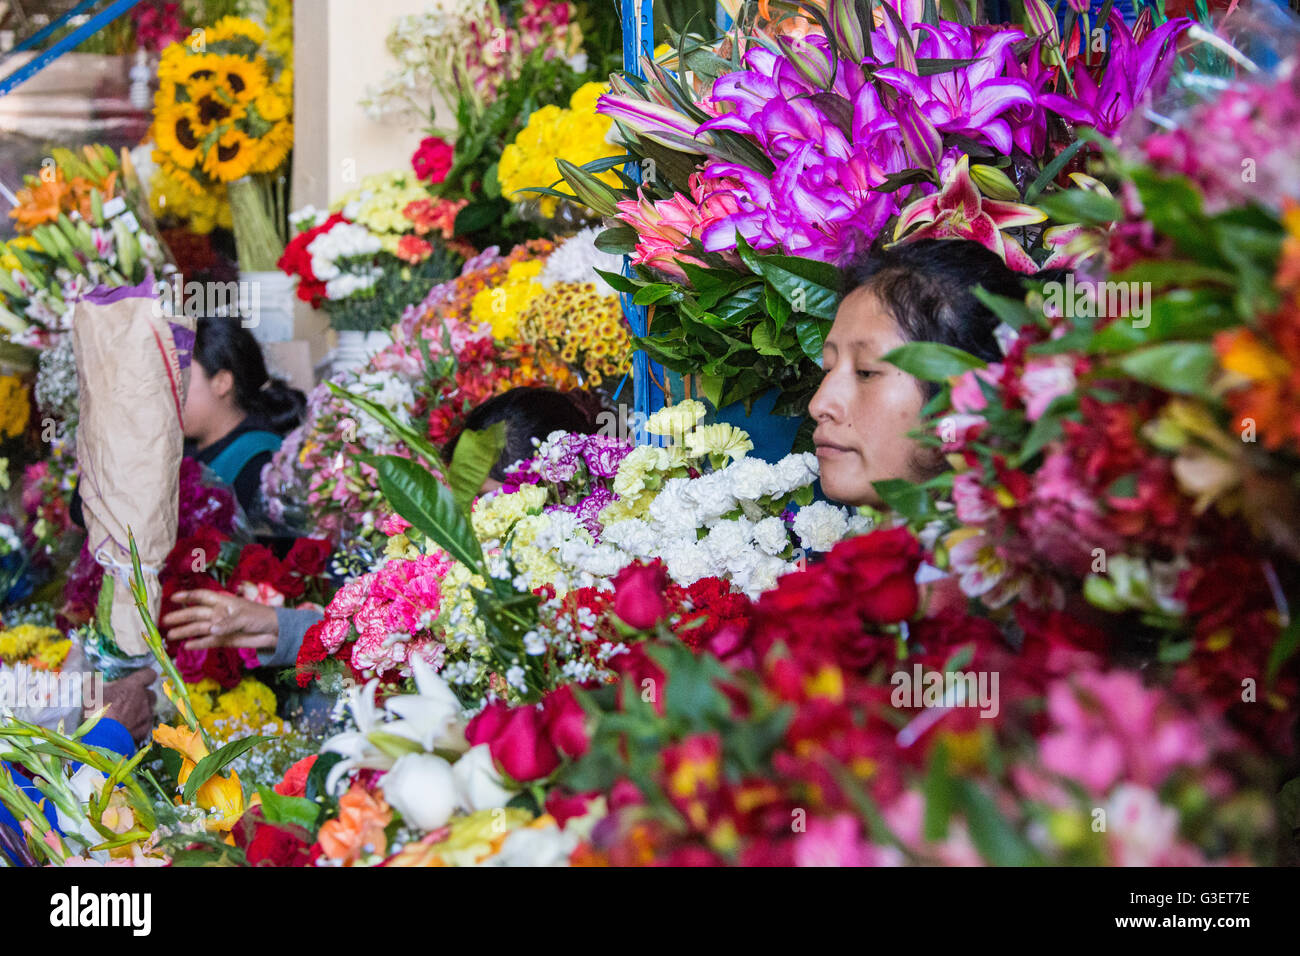 market in Cusco, Peru Stock Photo